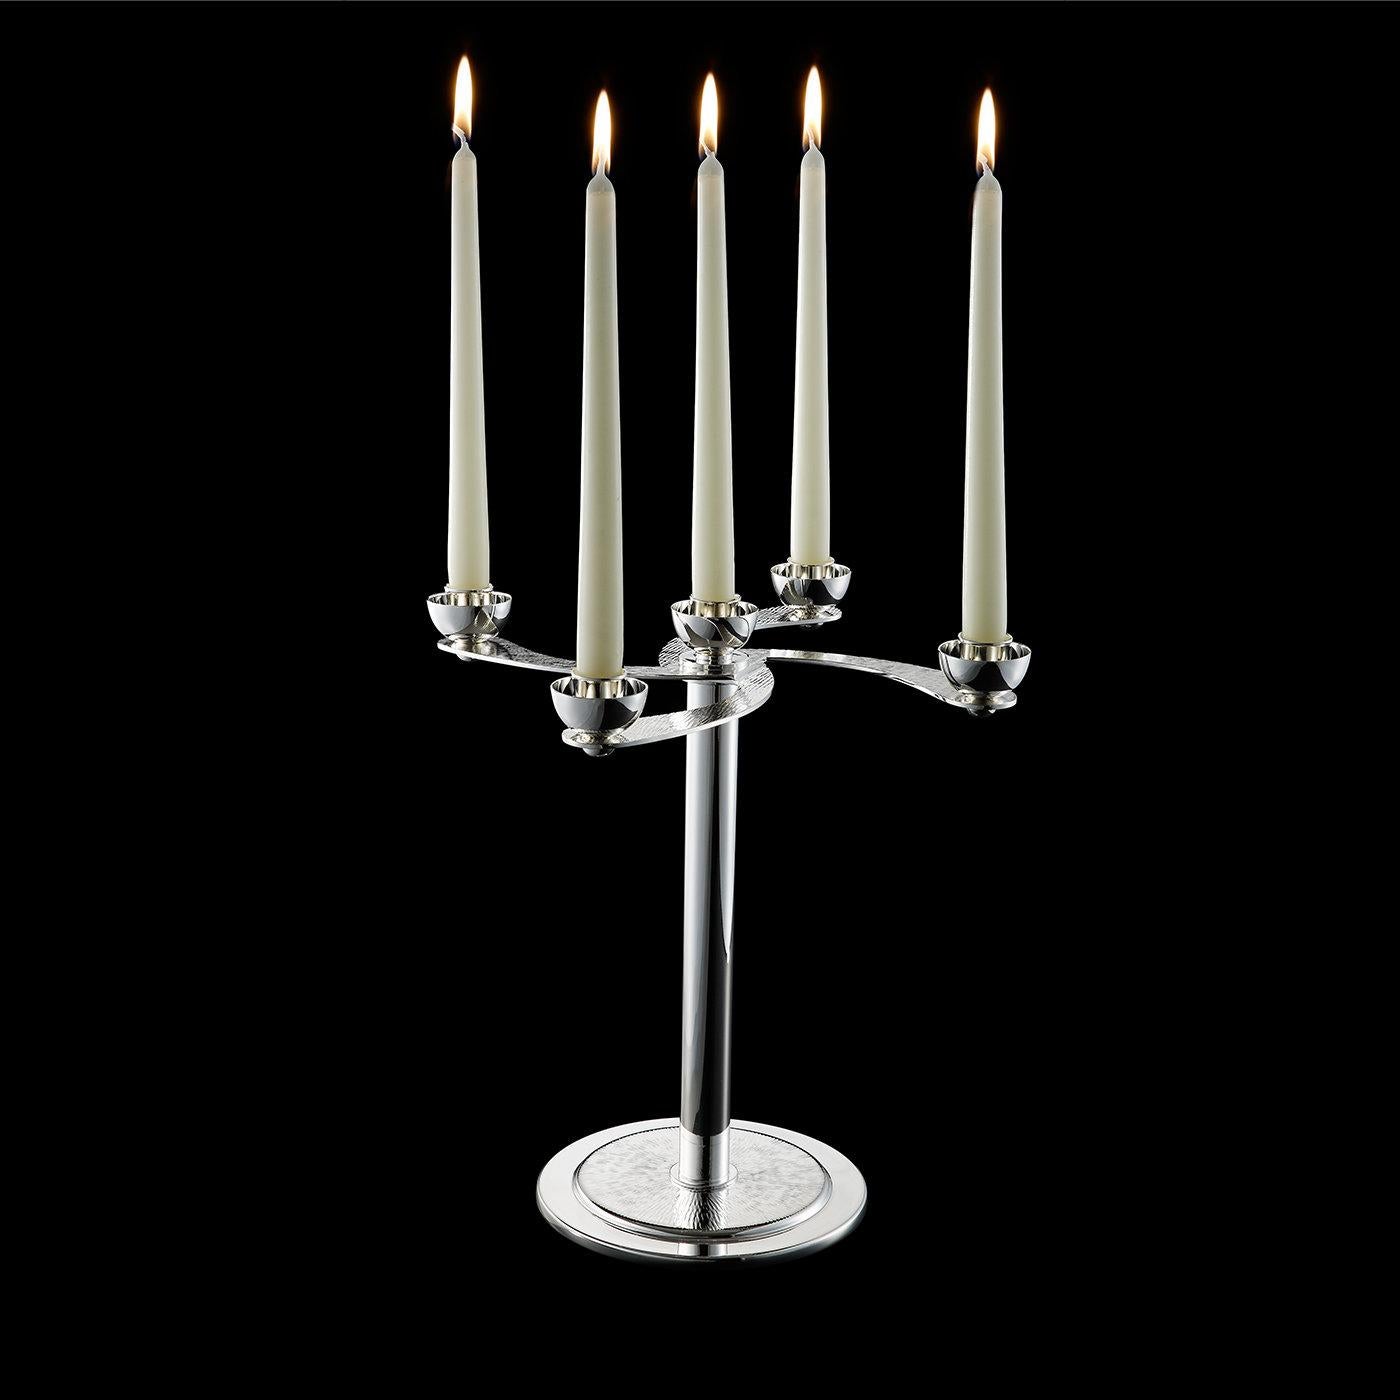 Der schöne Leuchter fasst fünf Kerzen und ist elegant aus einer versilberten Legierung gefertigt. Der Kandelaber kann in zwei Teile zerlegt werden, wobei der obere Teil die Kerzen aufnimmt und der untere Teil als Vase dient. Die Arme der Kandelaber